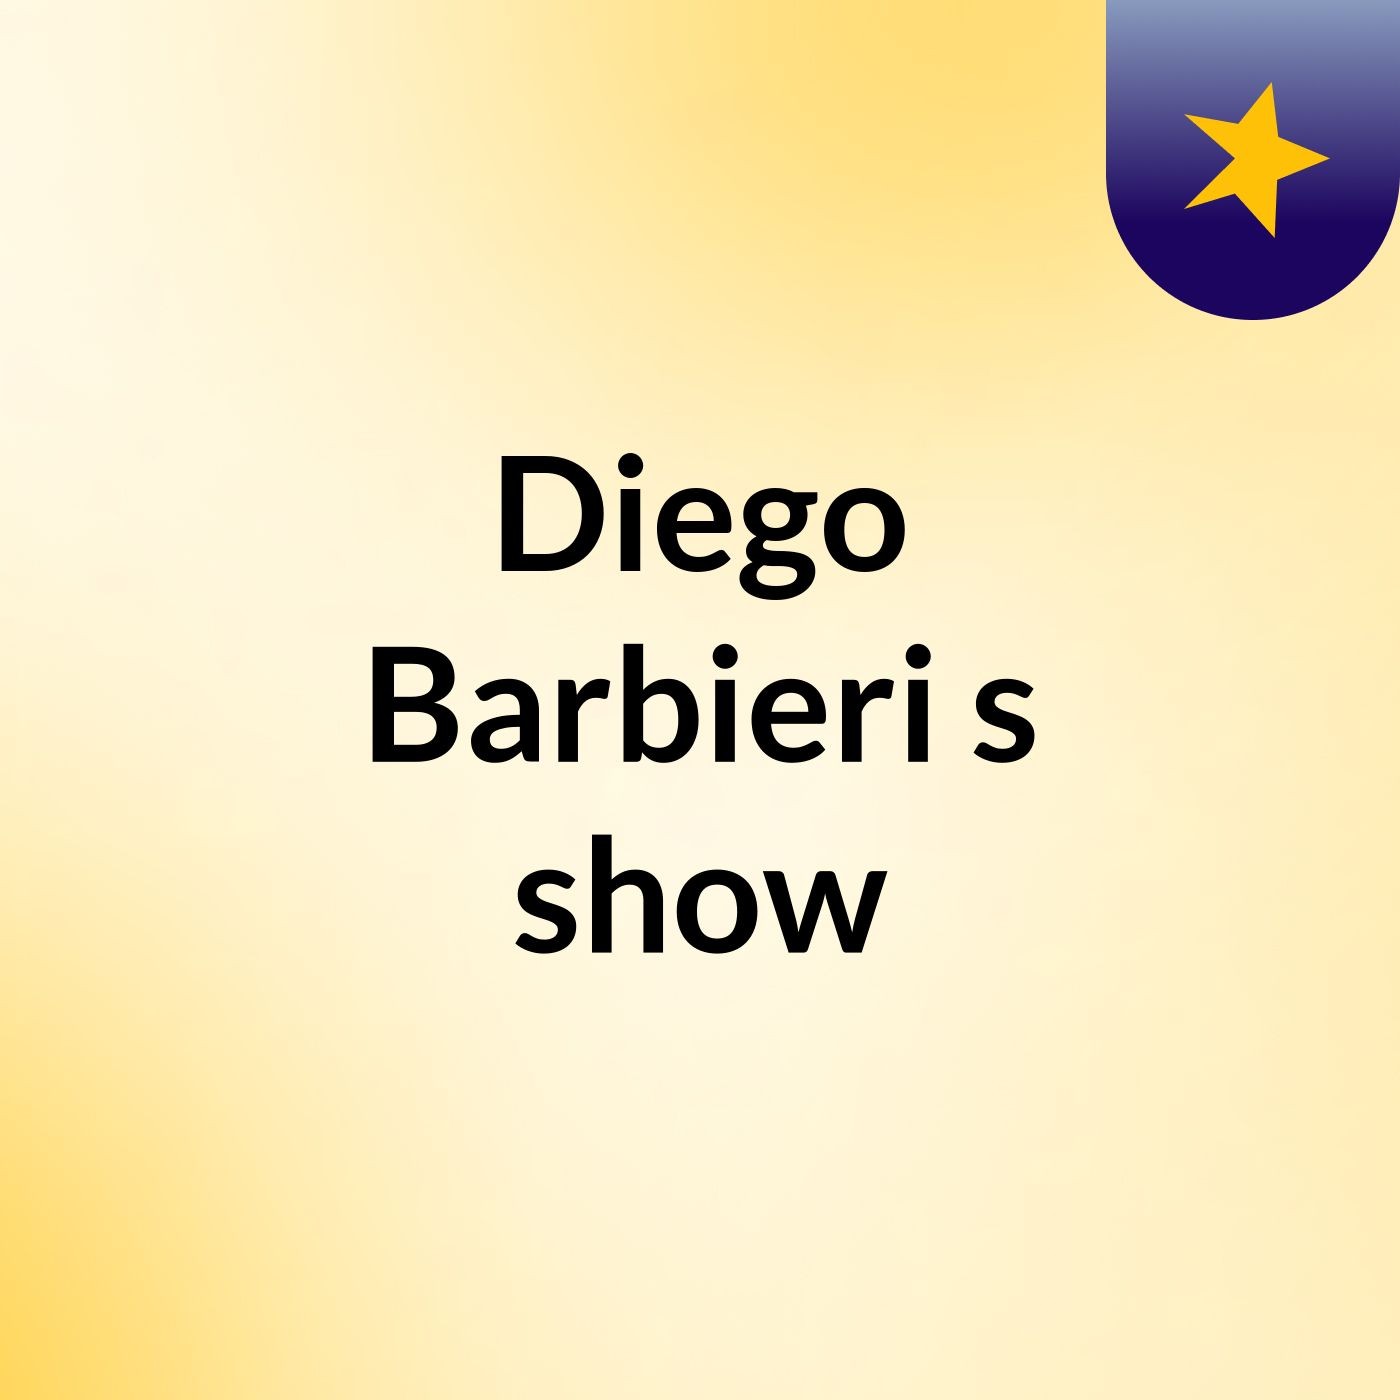 Diego Barbieri's show